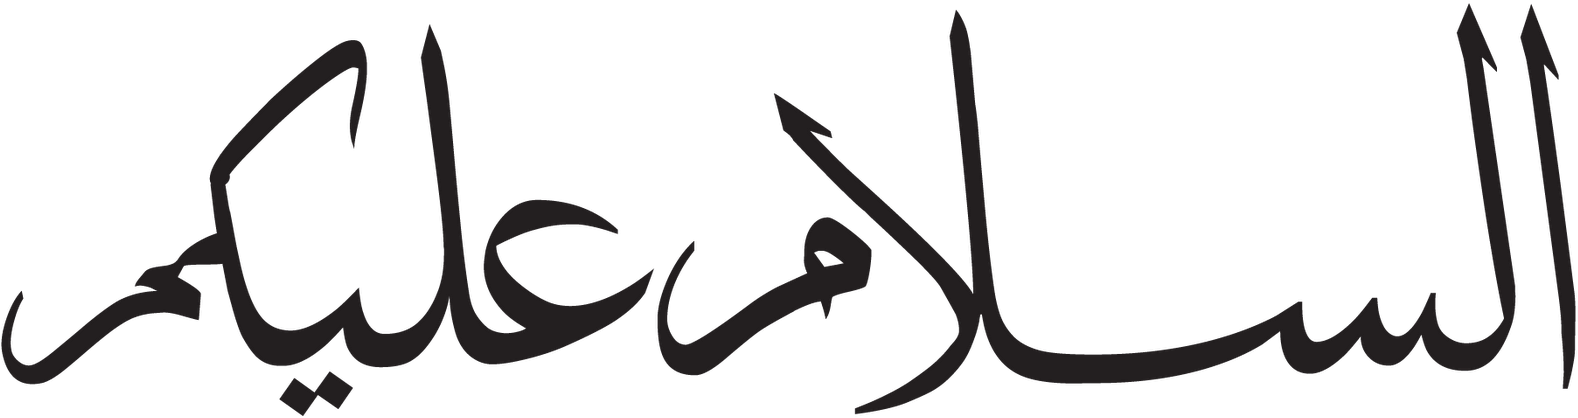 Арабская э. Арабские надписи. Арабская надпись на белом фоне. Арабские символы. Красивые надписи на арабском.